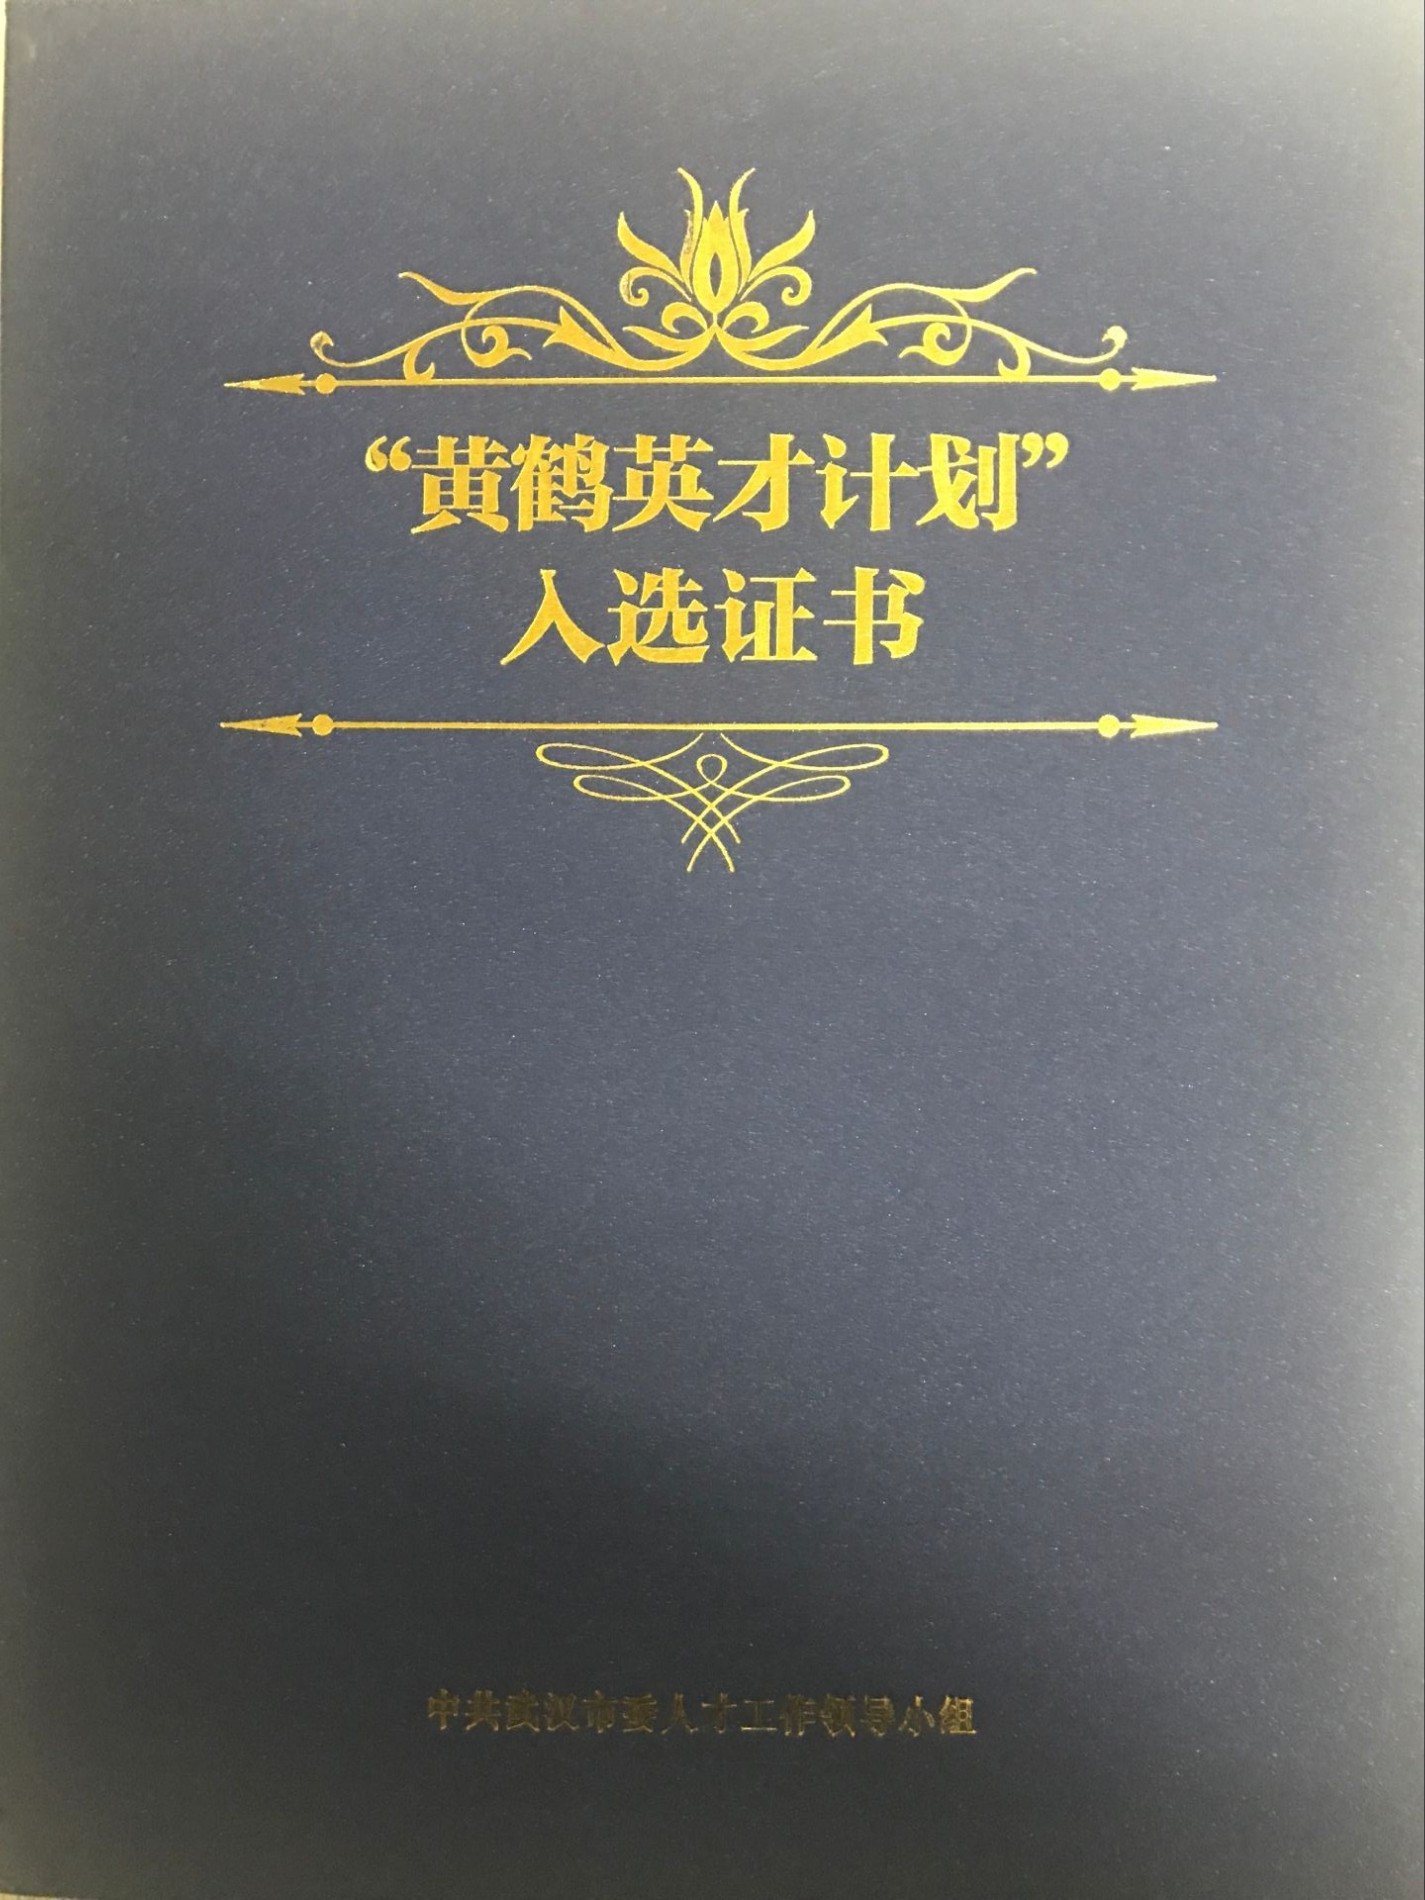 Huang He Yingcai Scheme certificato